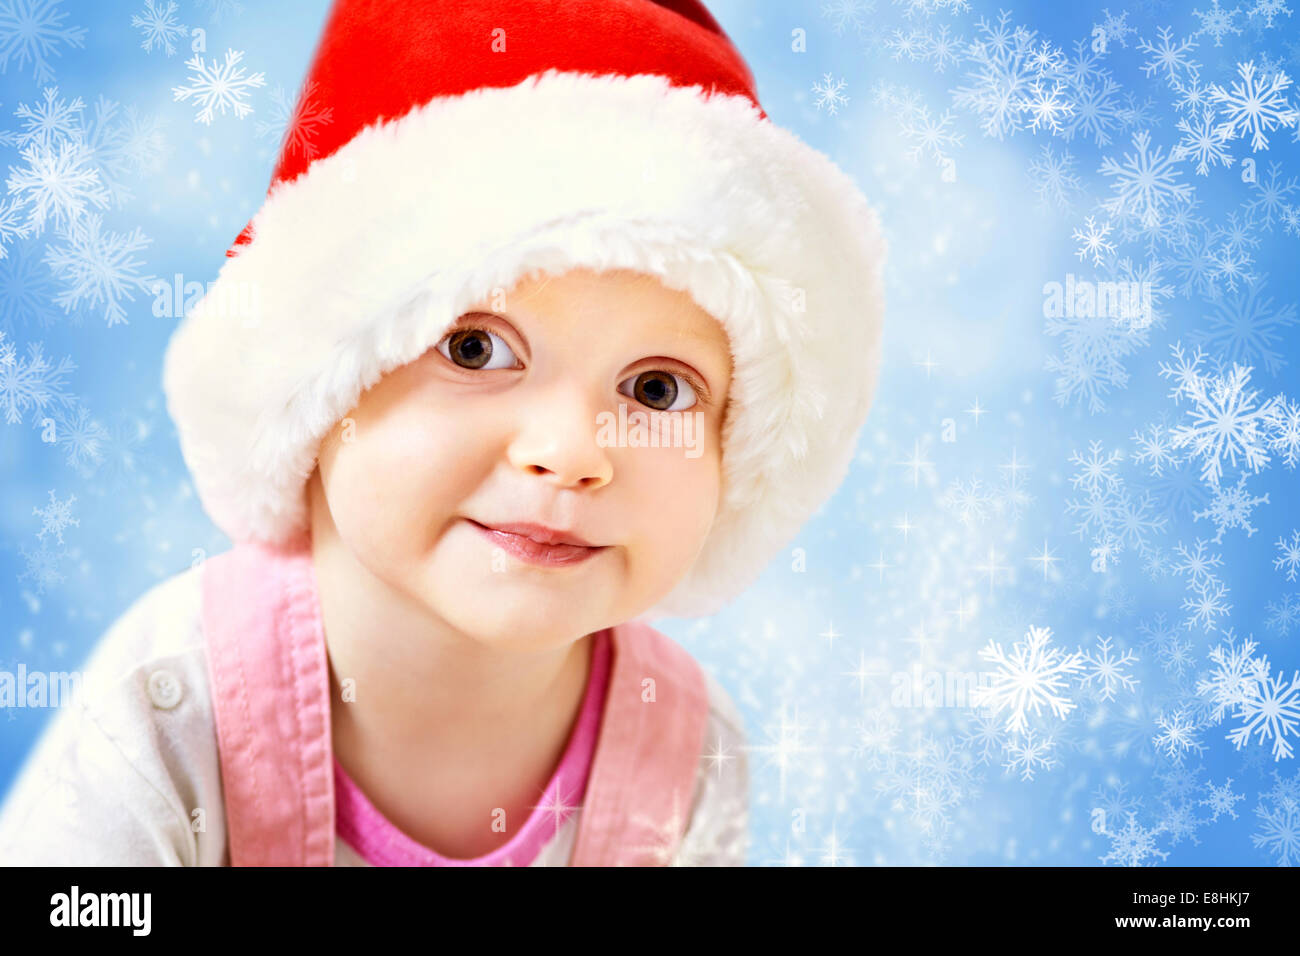 baby in Santa hat Stock Photo